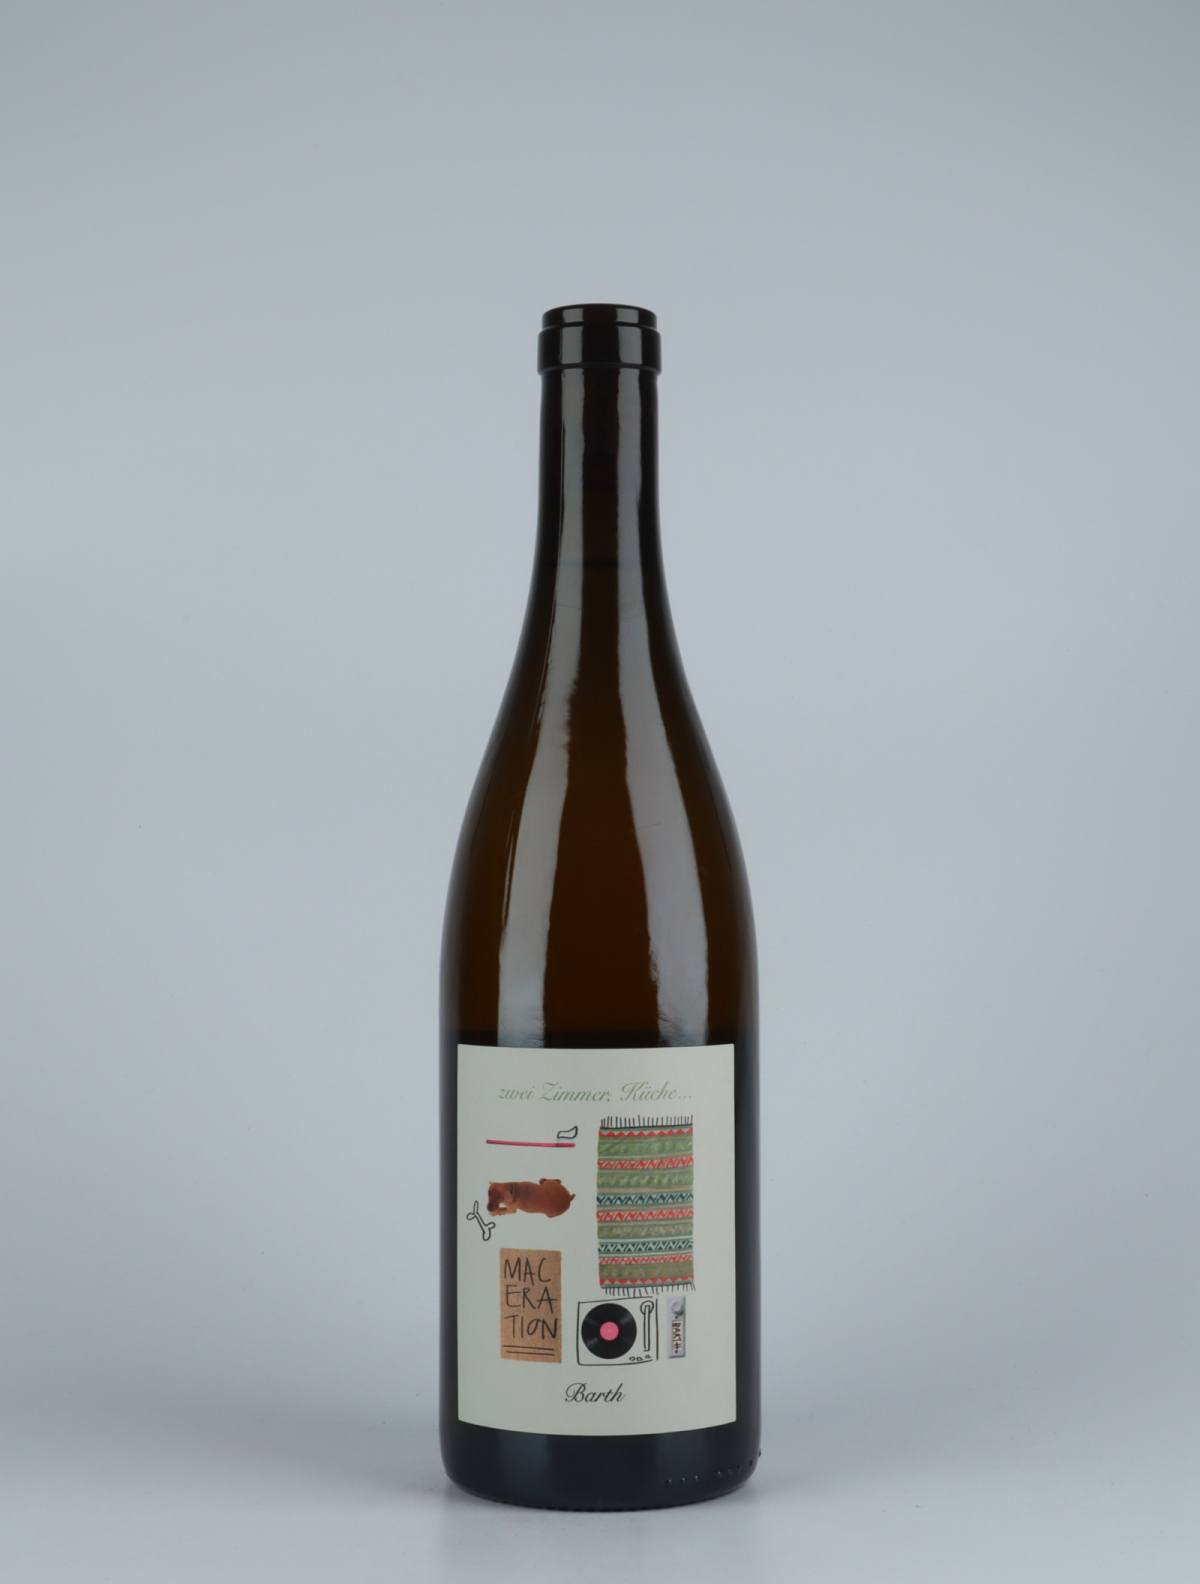 A bottle 2019 Zwei Zimmer, Küche, Barth - Maceration Orange wine from Christopher Barth, Rheinhessen in Germany